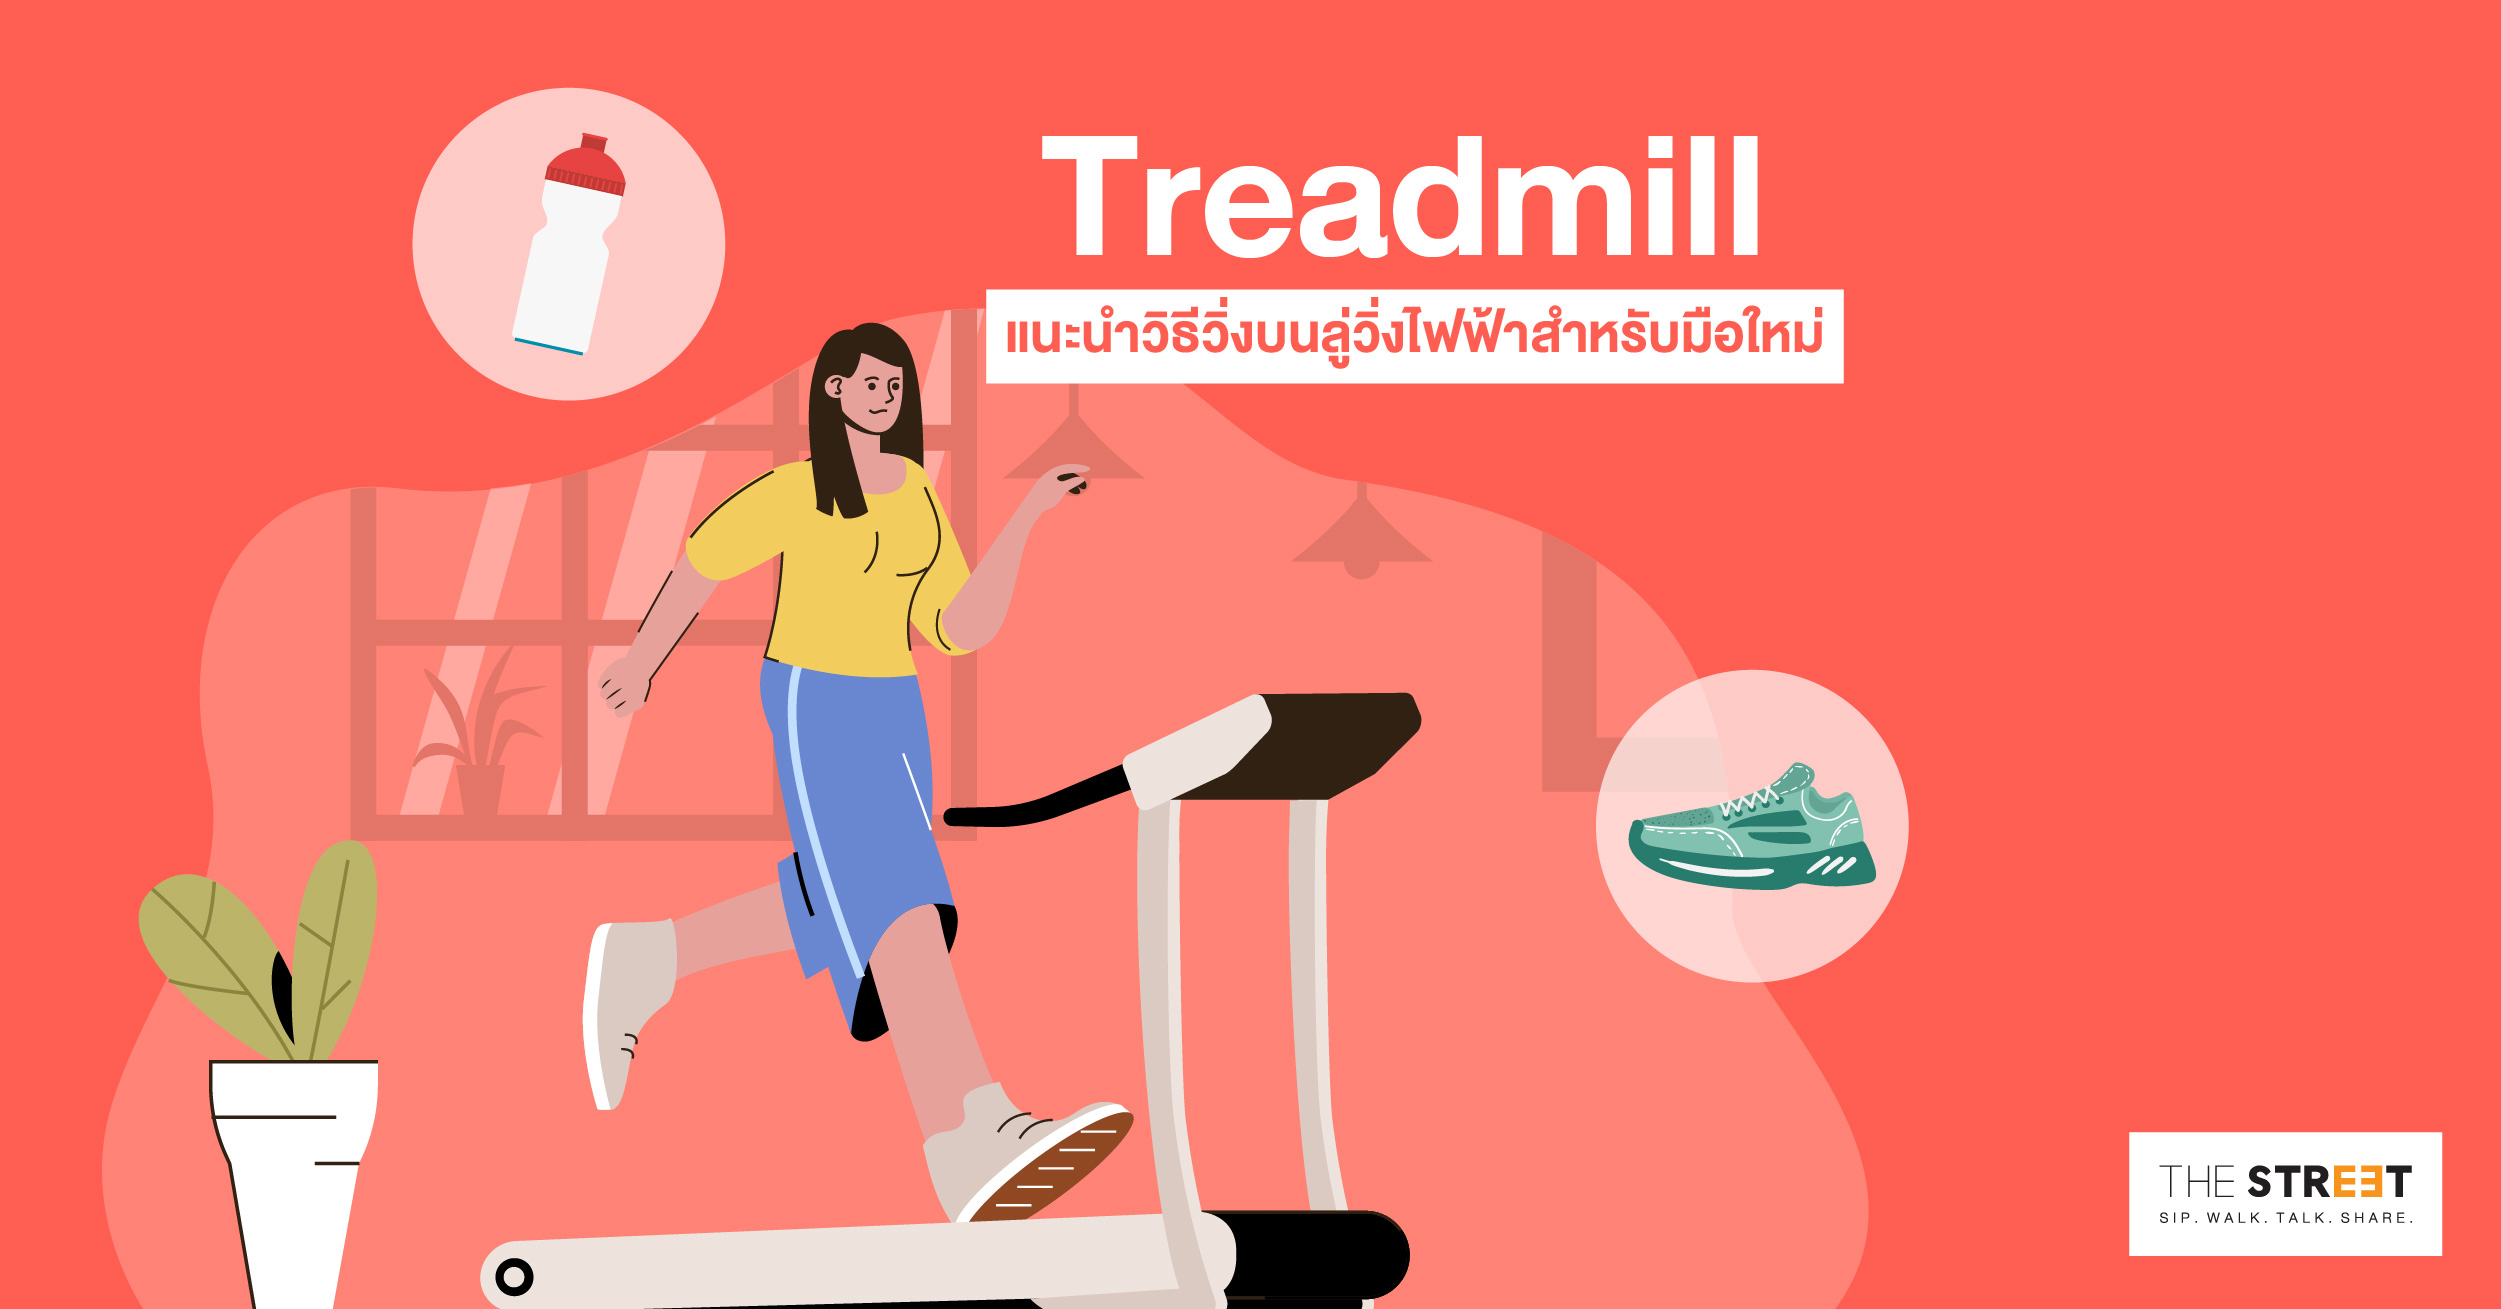 treadmill-แนะนำวิธีวิ่งบนลู่วิ่งไฟฟ้าอย่างถูกวิธีสำหรับมือใหม่